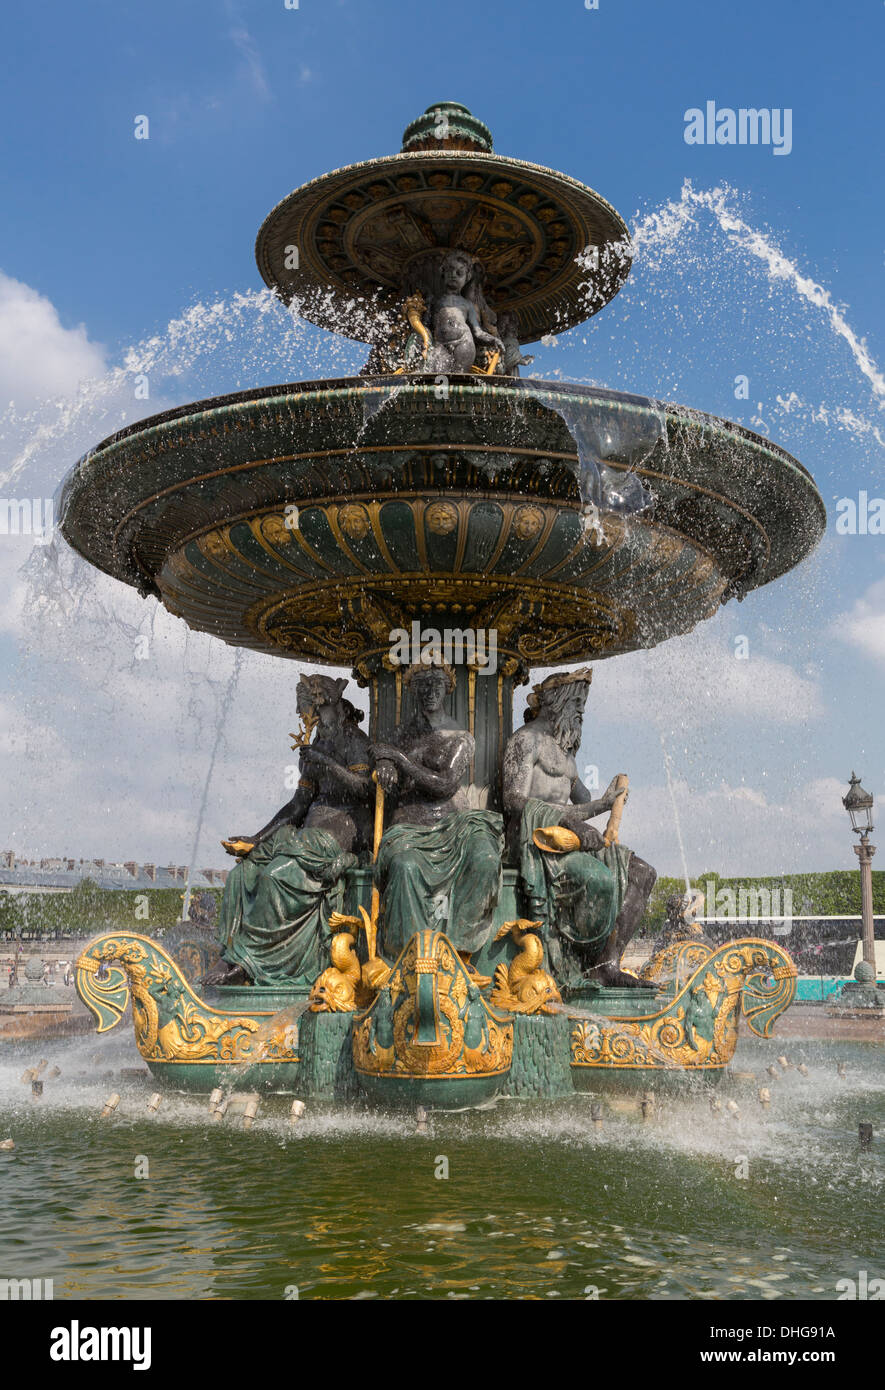 Fontaine de River de Commerce et de navigation sur les Champs Elysées à Paris, France. Banque D'Images